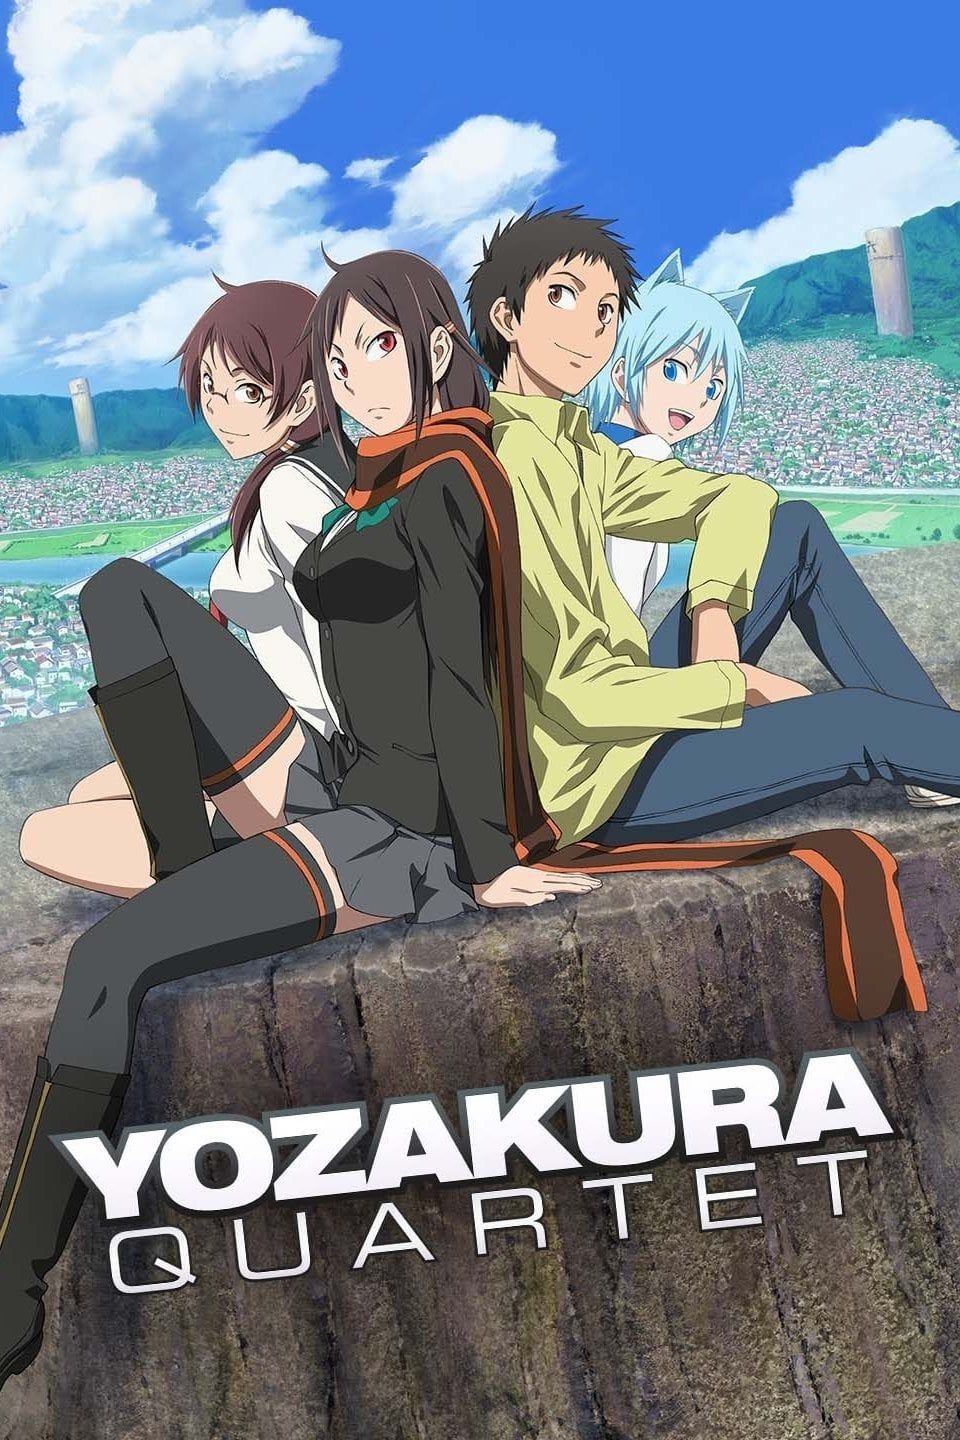 Yozakura Quartet OVA (TV) (Sub) Full DVD